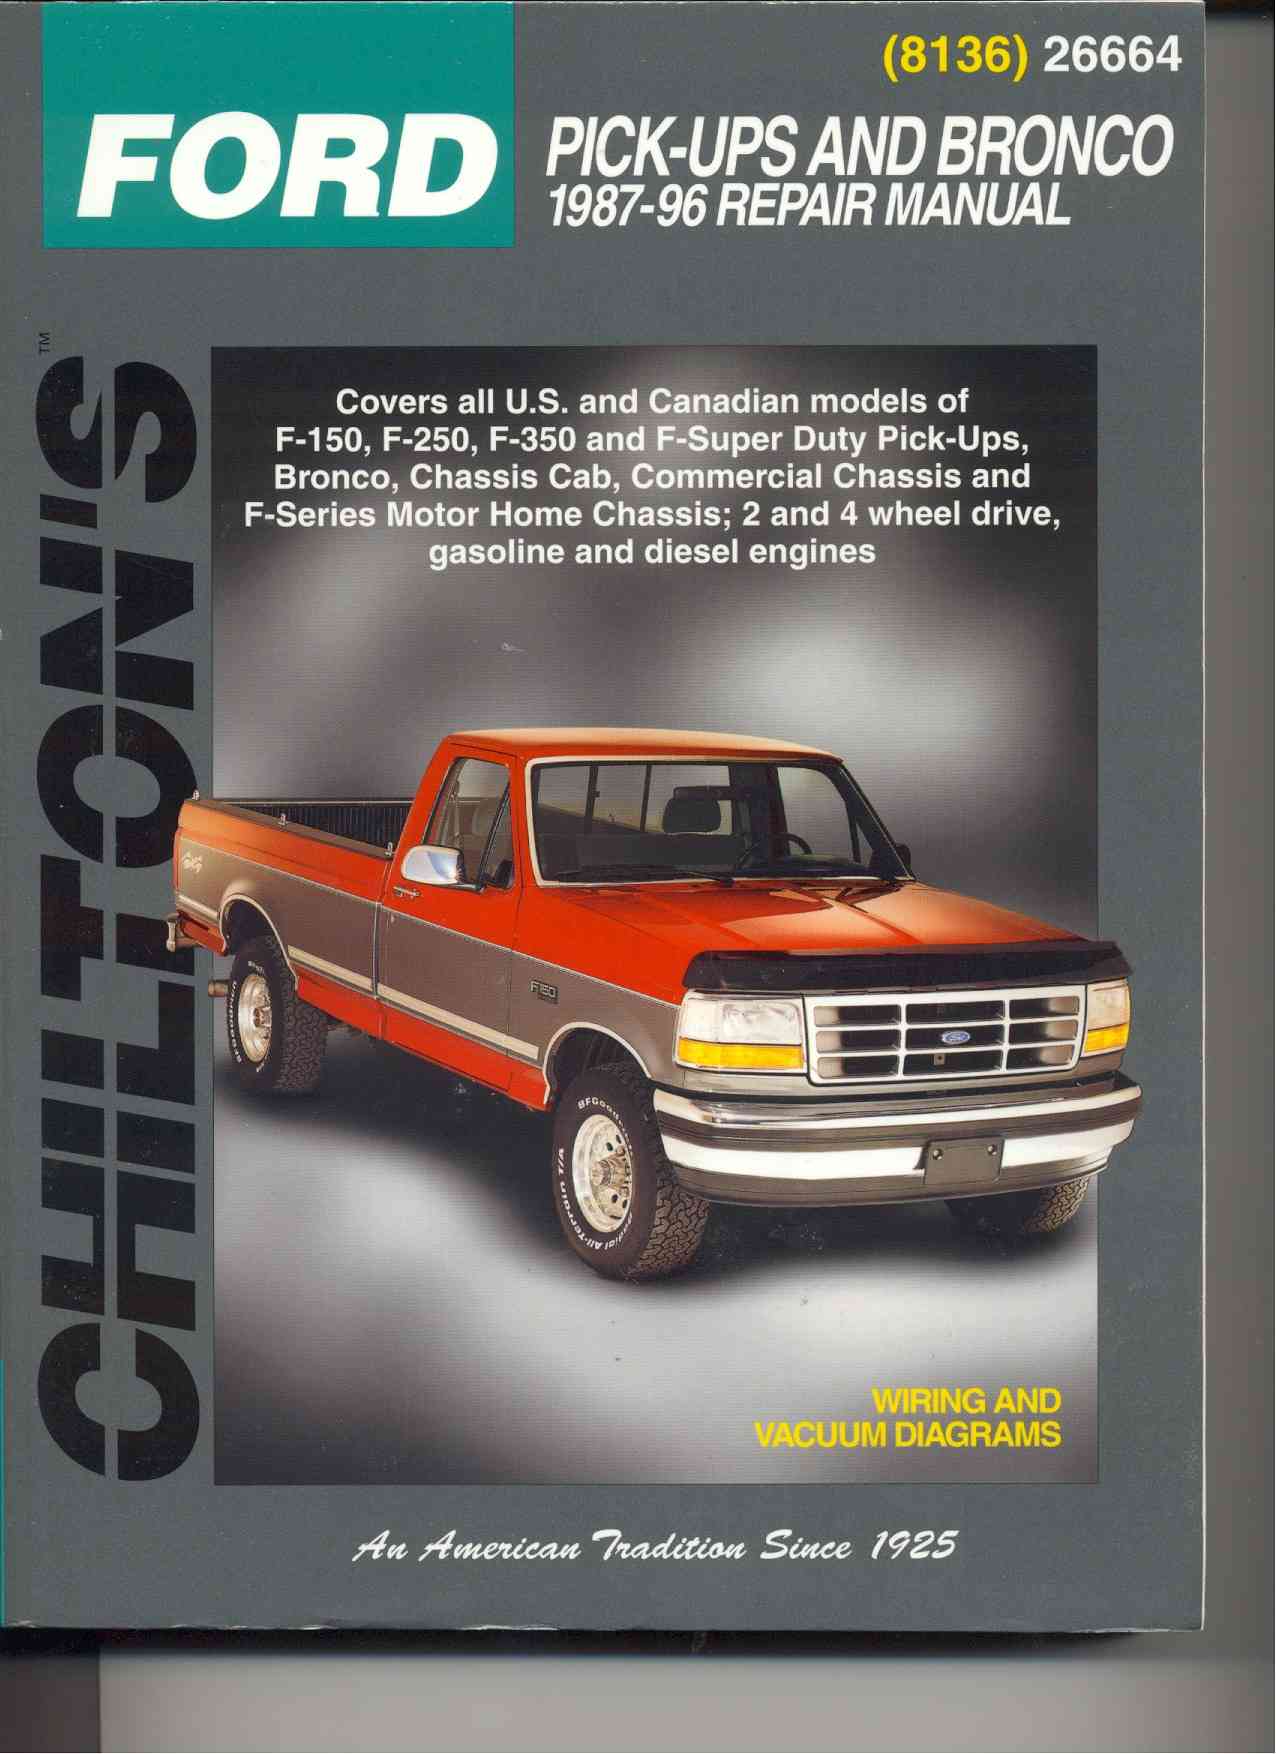 Ford pick-ups and bronco haynes repair manual pdf #5